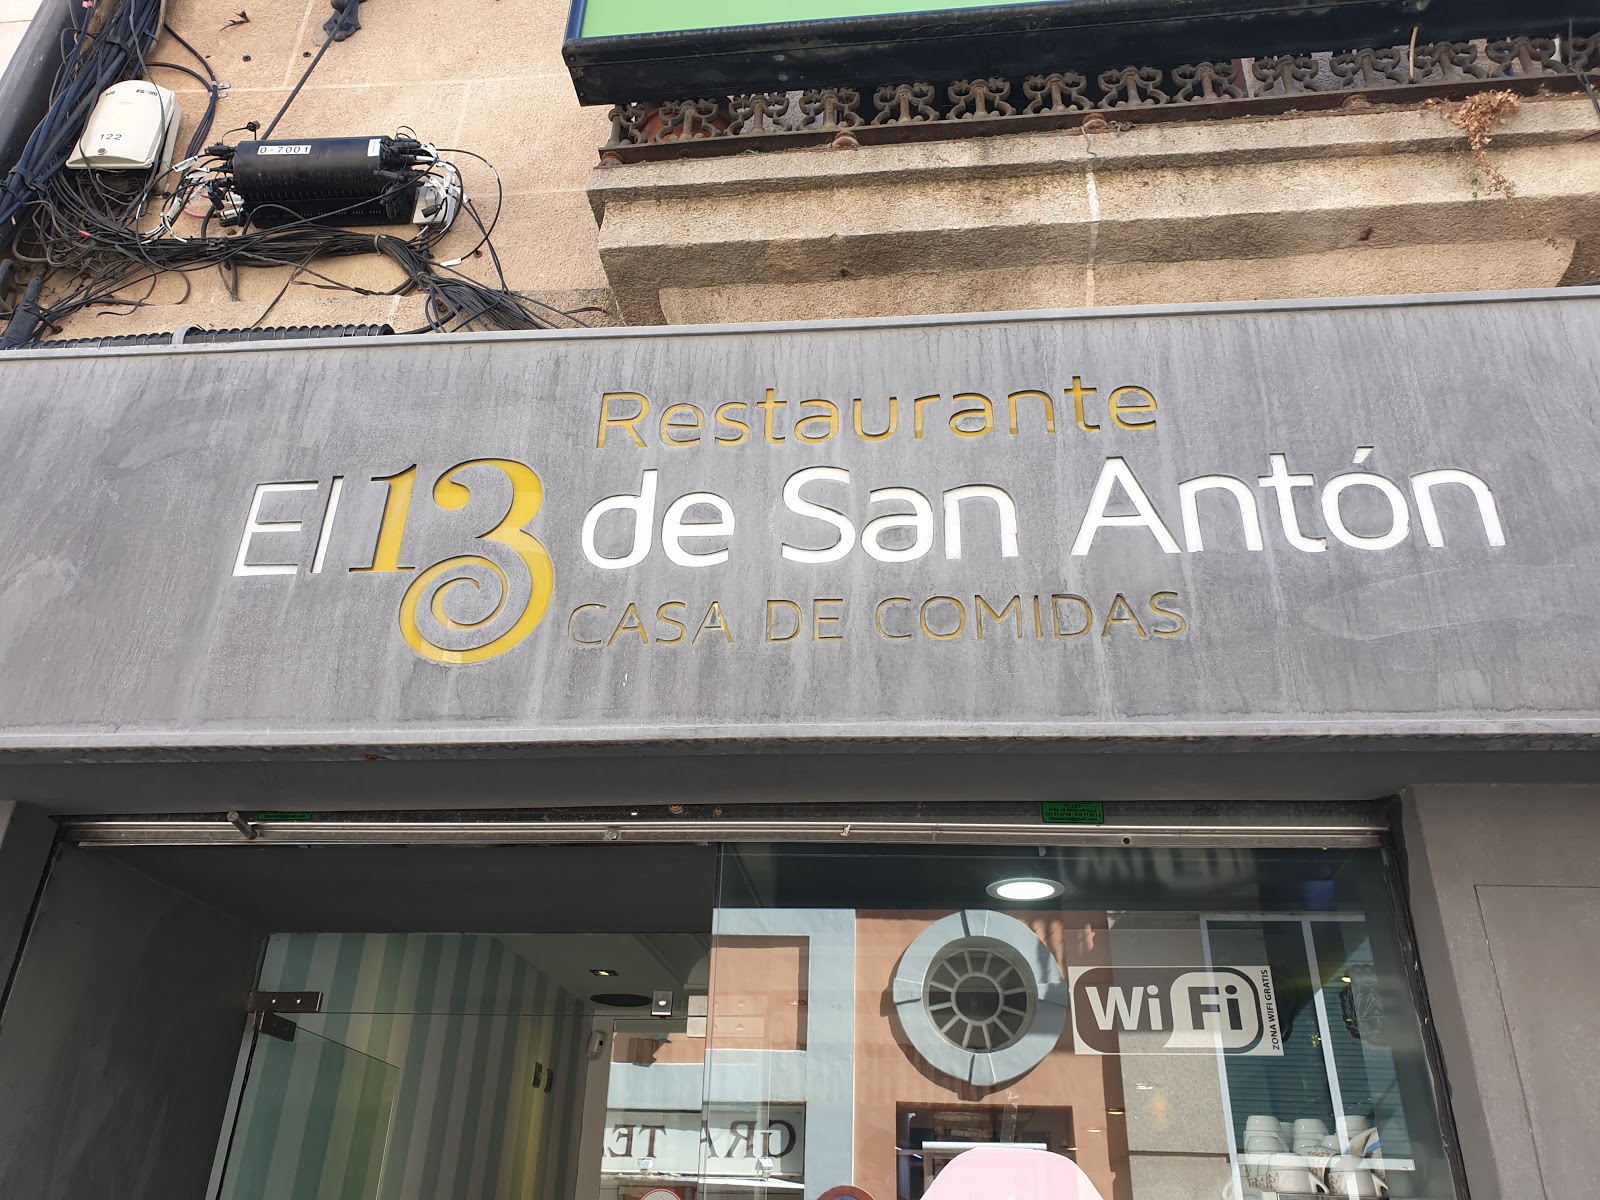 Restaurante el 13 de San Antón